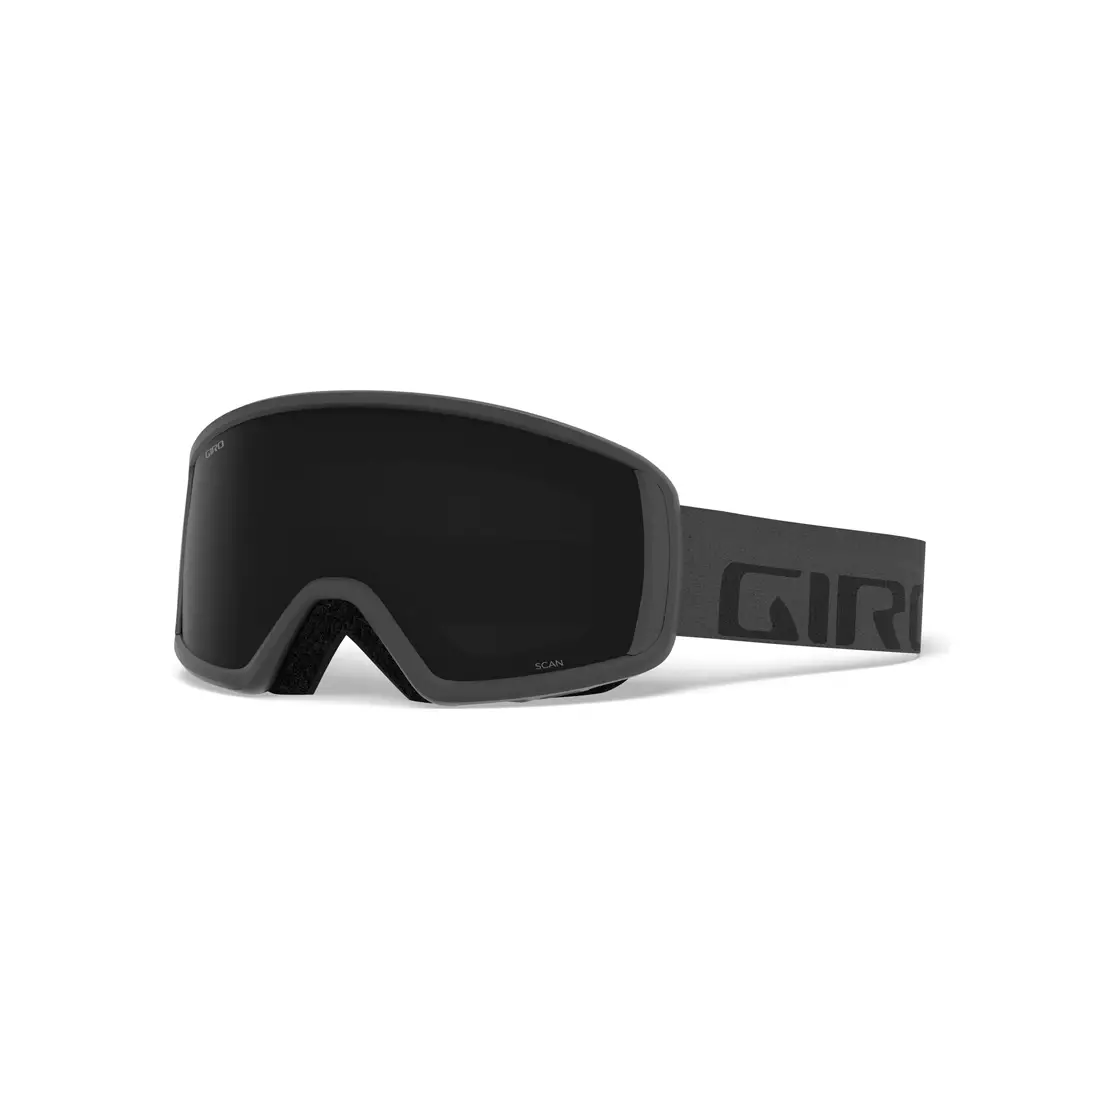 Lyžařské / snowboardové brýle GIRO SCAN GREY WORDMARK GR-7094455